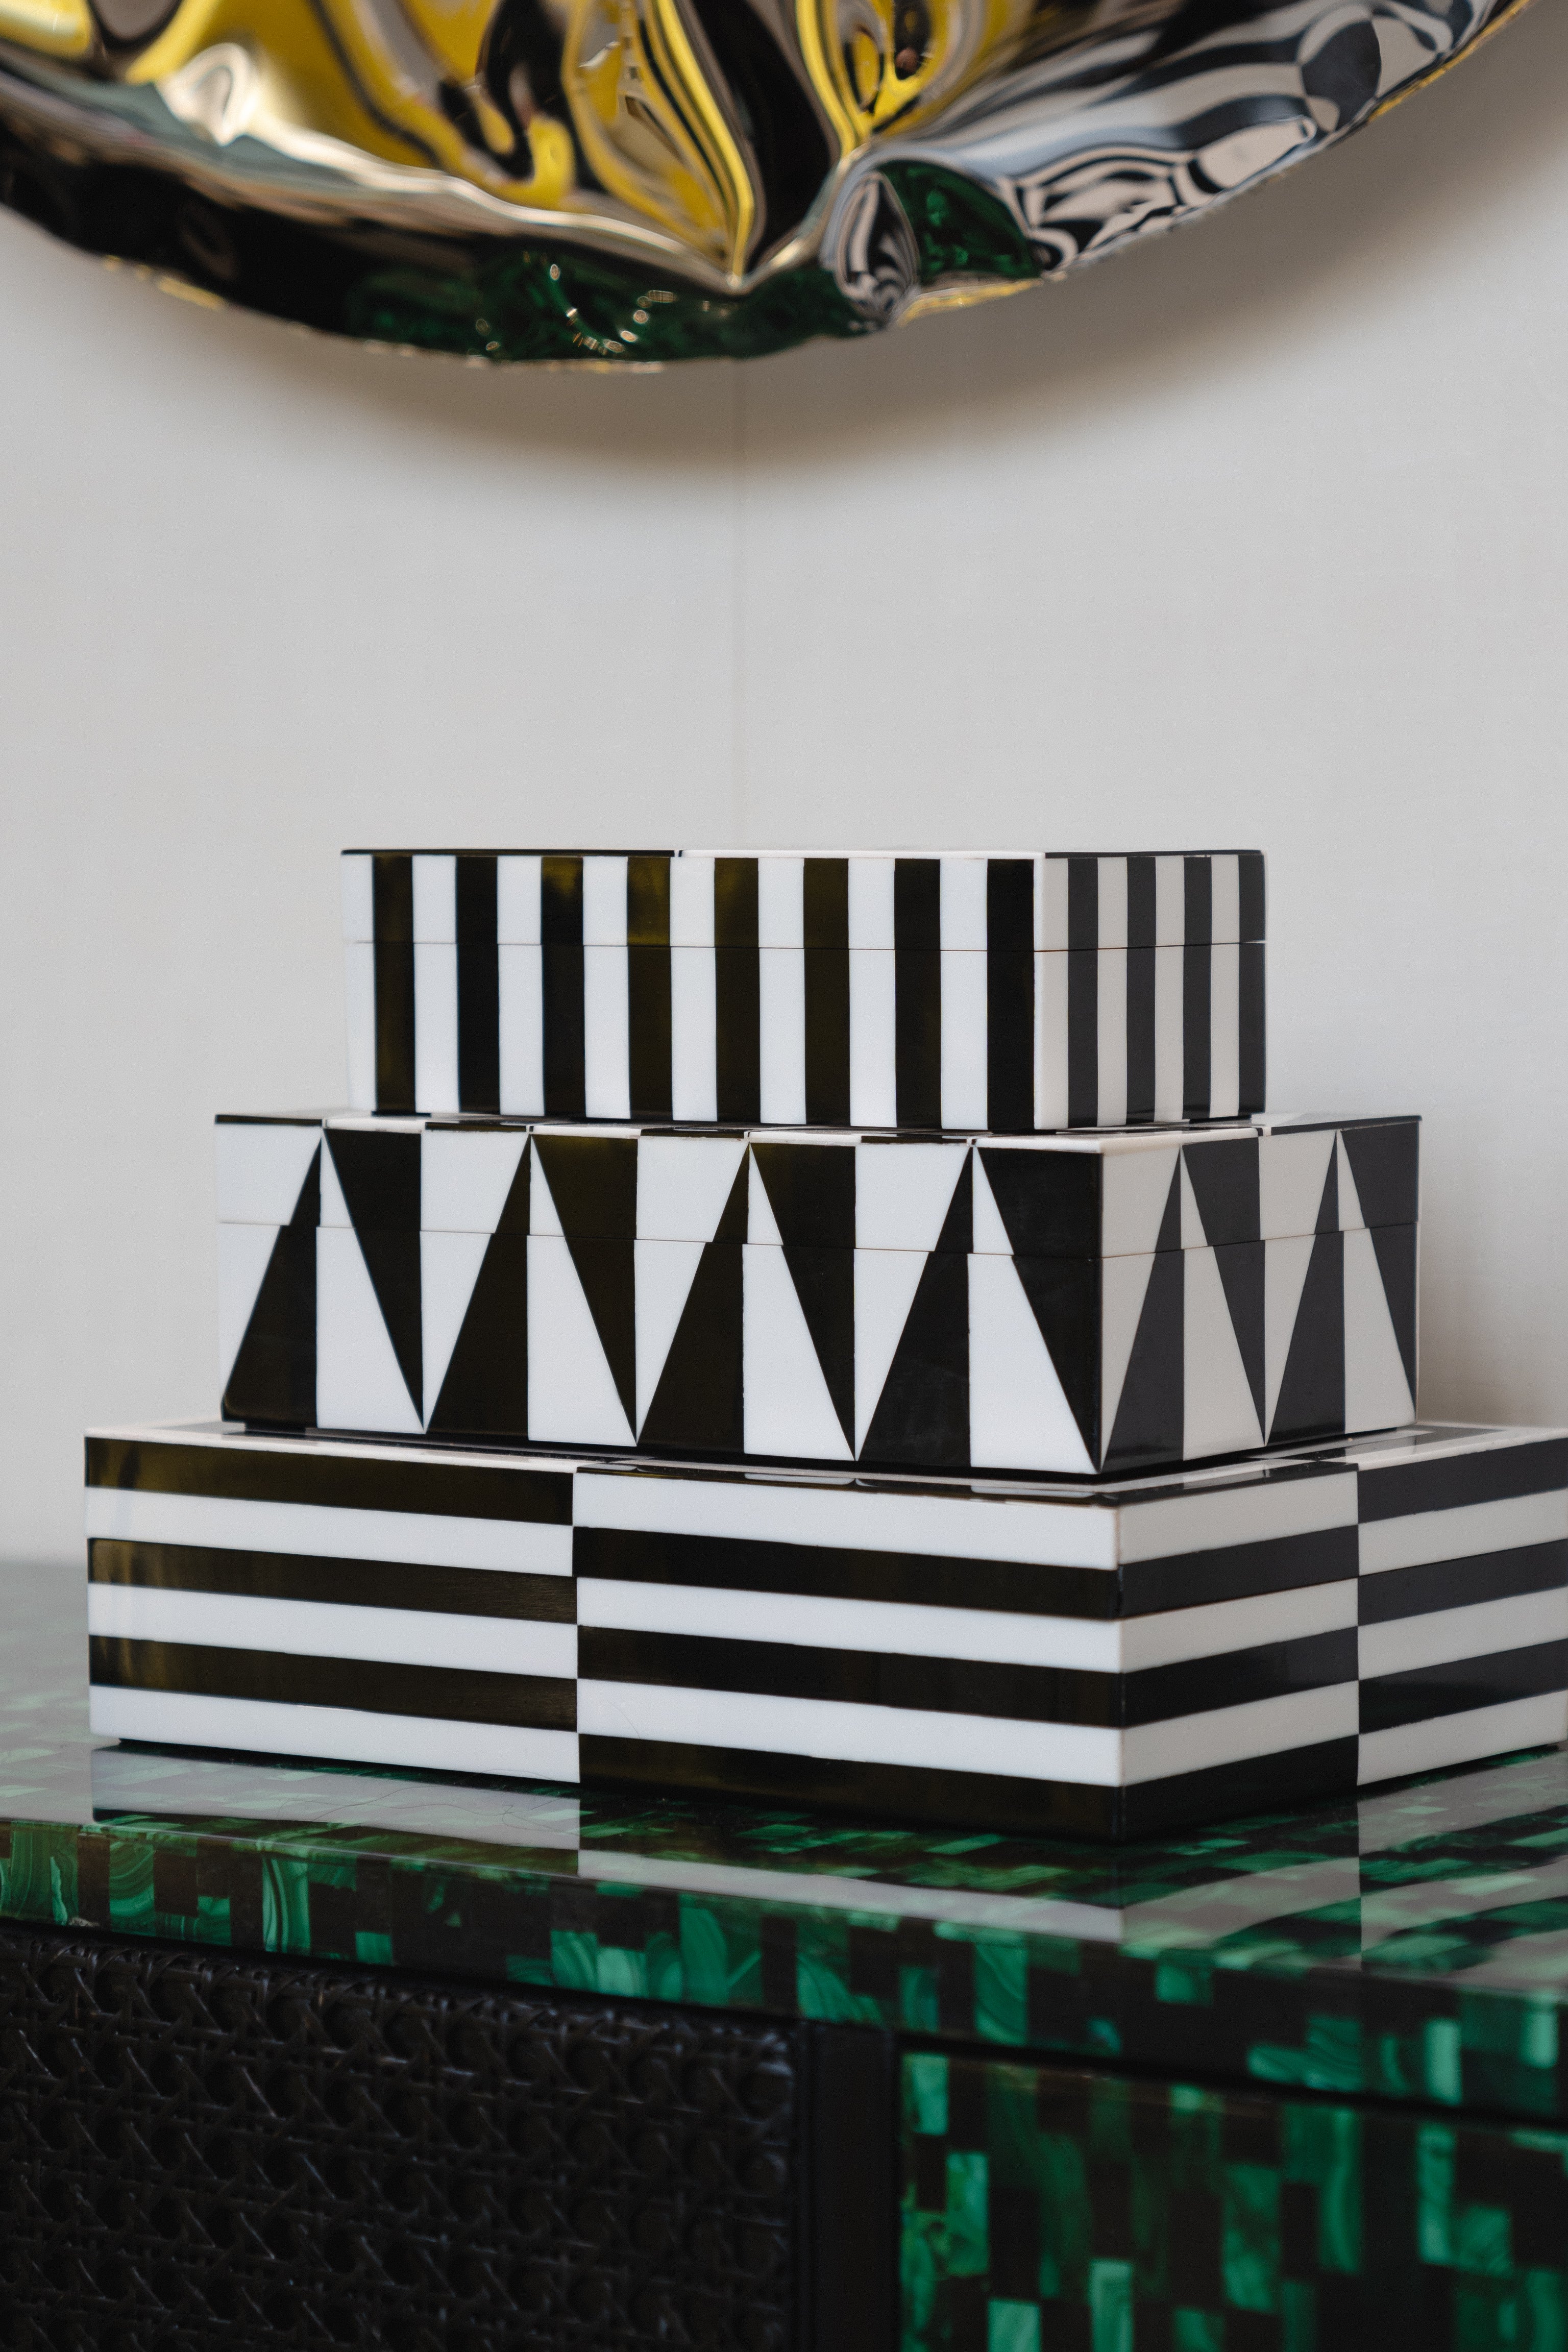 Set of Art Lacquer Boxes - Decorative Boxes